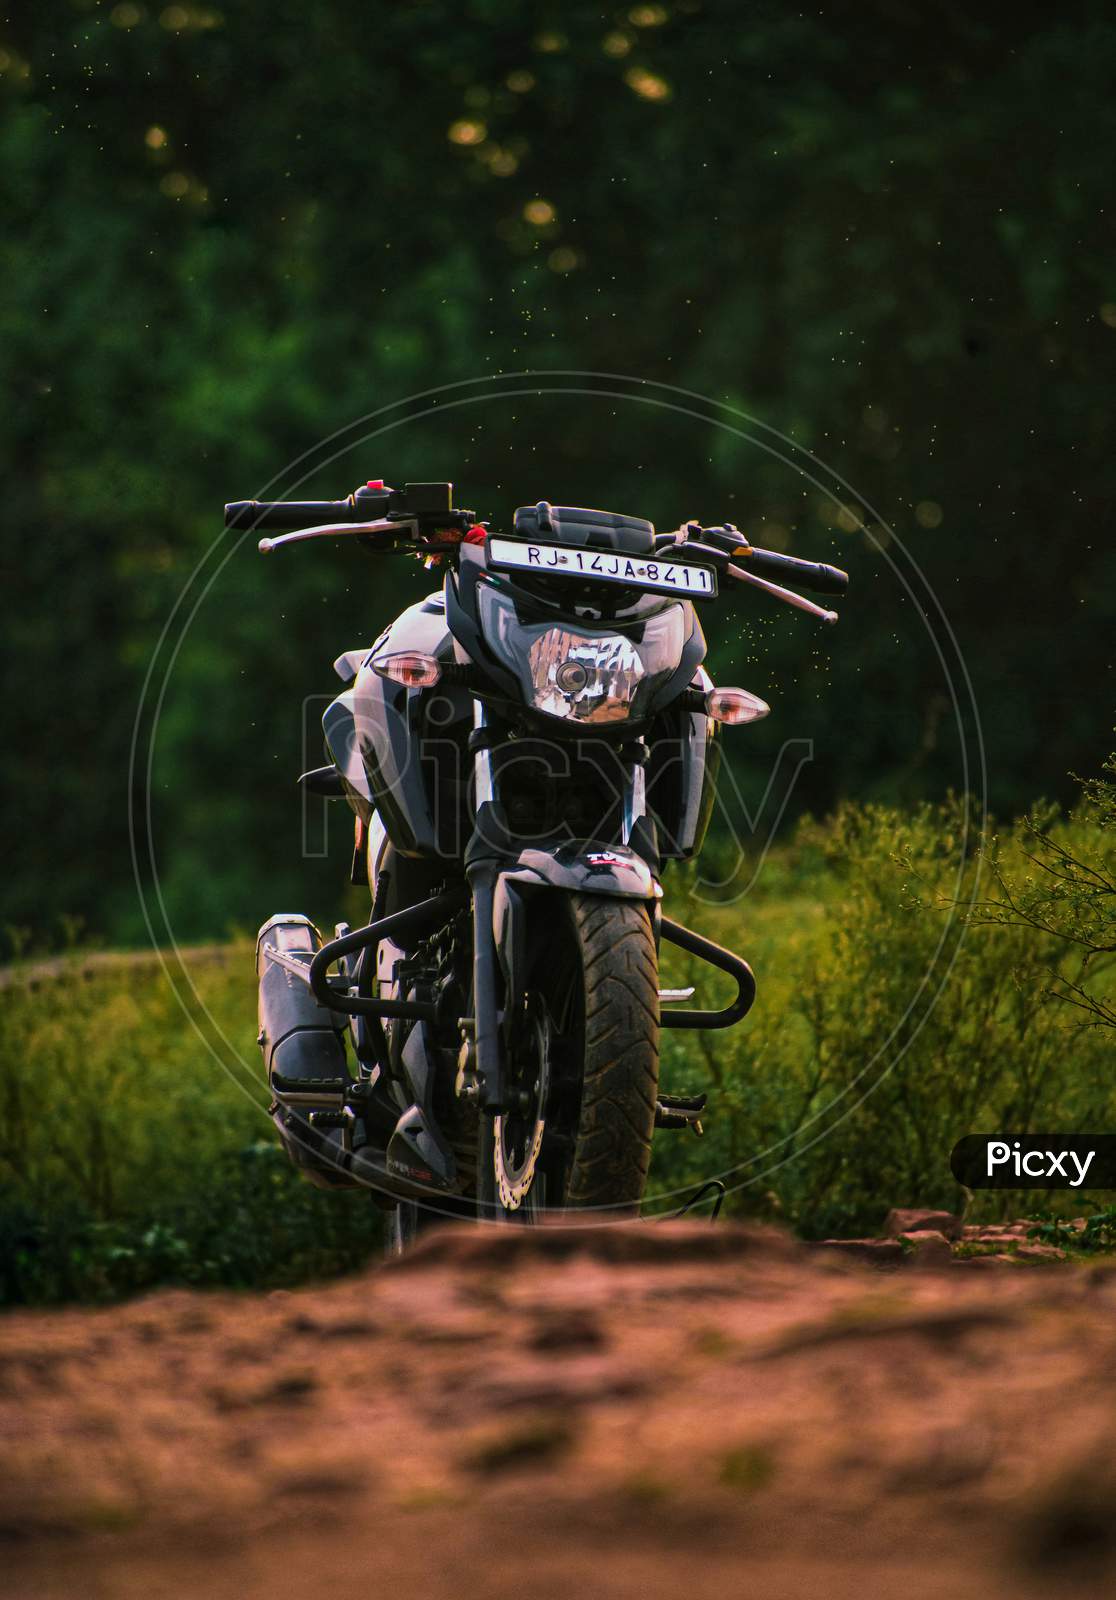 gennemførlig Dømme midlertidig Image of Bike , Racing bike, bike in nature-OS709597-Picxy